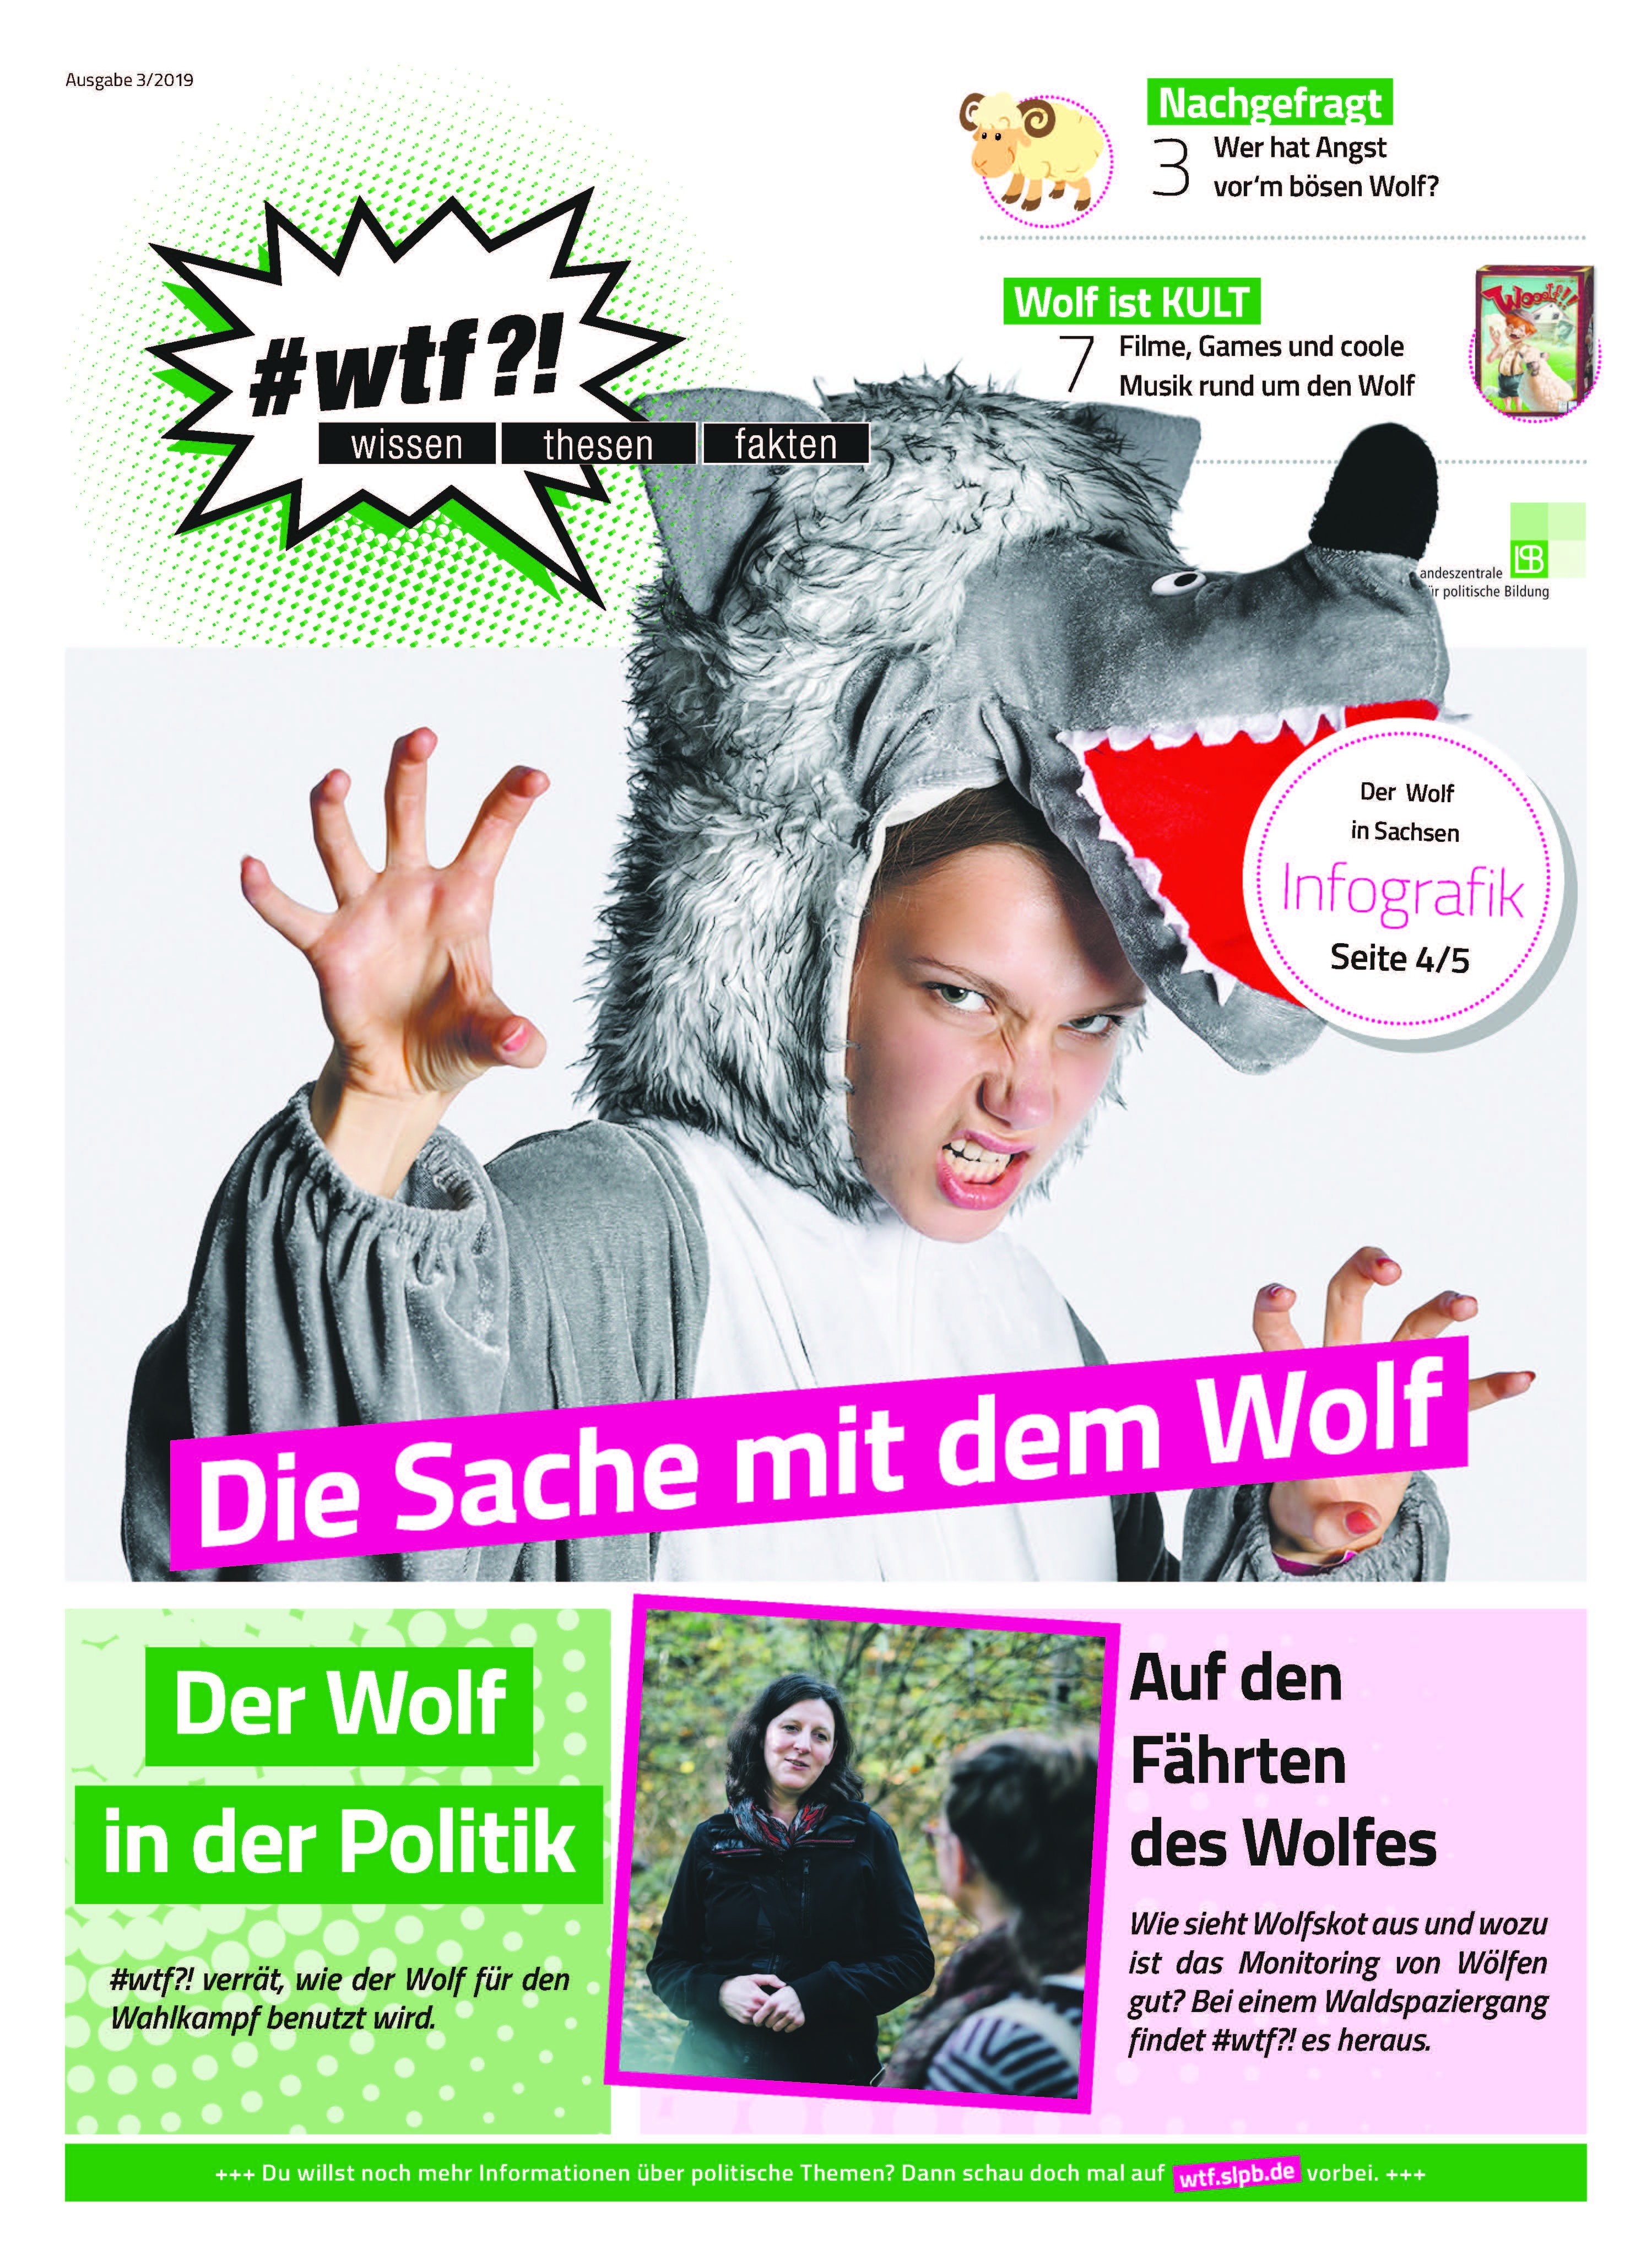 1122 wtf-Magazin 11 "Die Sache mit dem Wolf" (Ausgabe 3/2019)